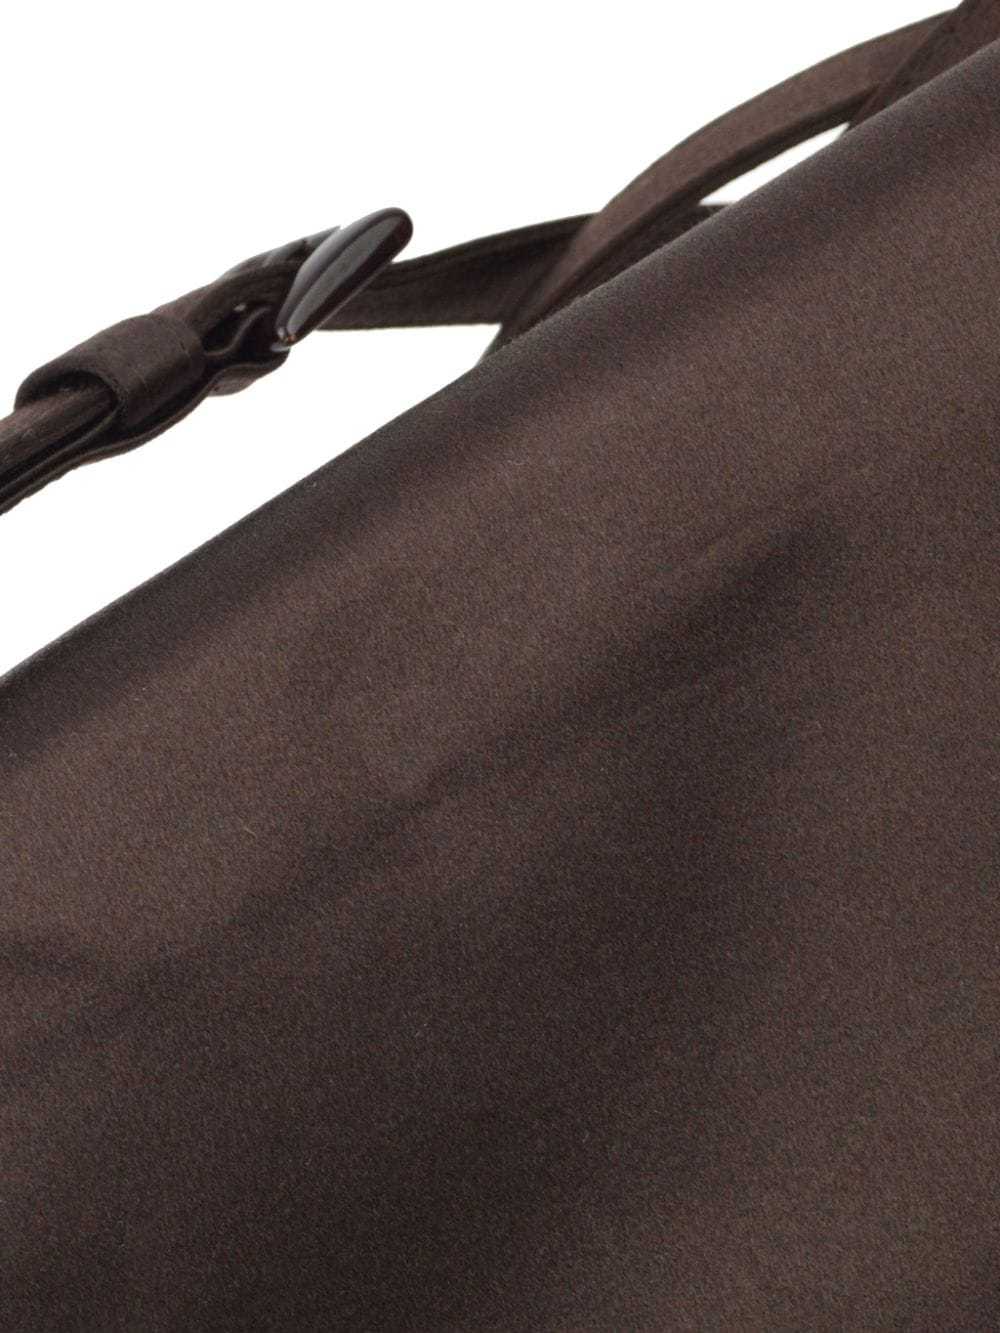 Prada Pre-Owned 1990-2000 flap shoulder bag - Bro… - image 4